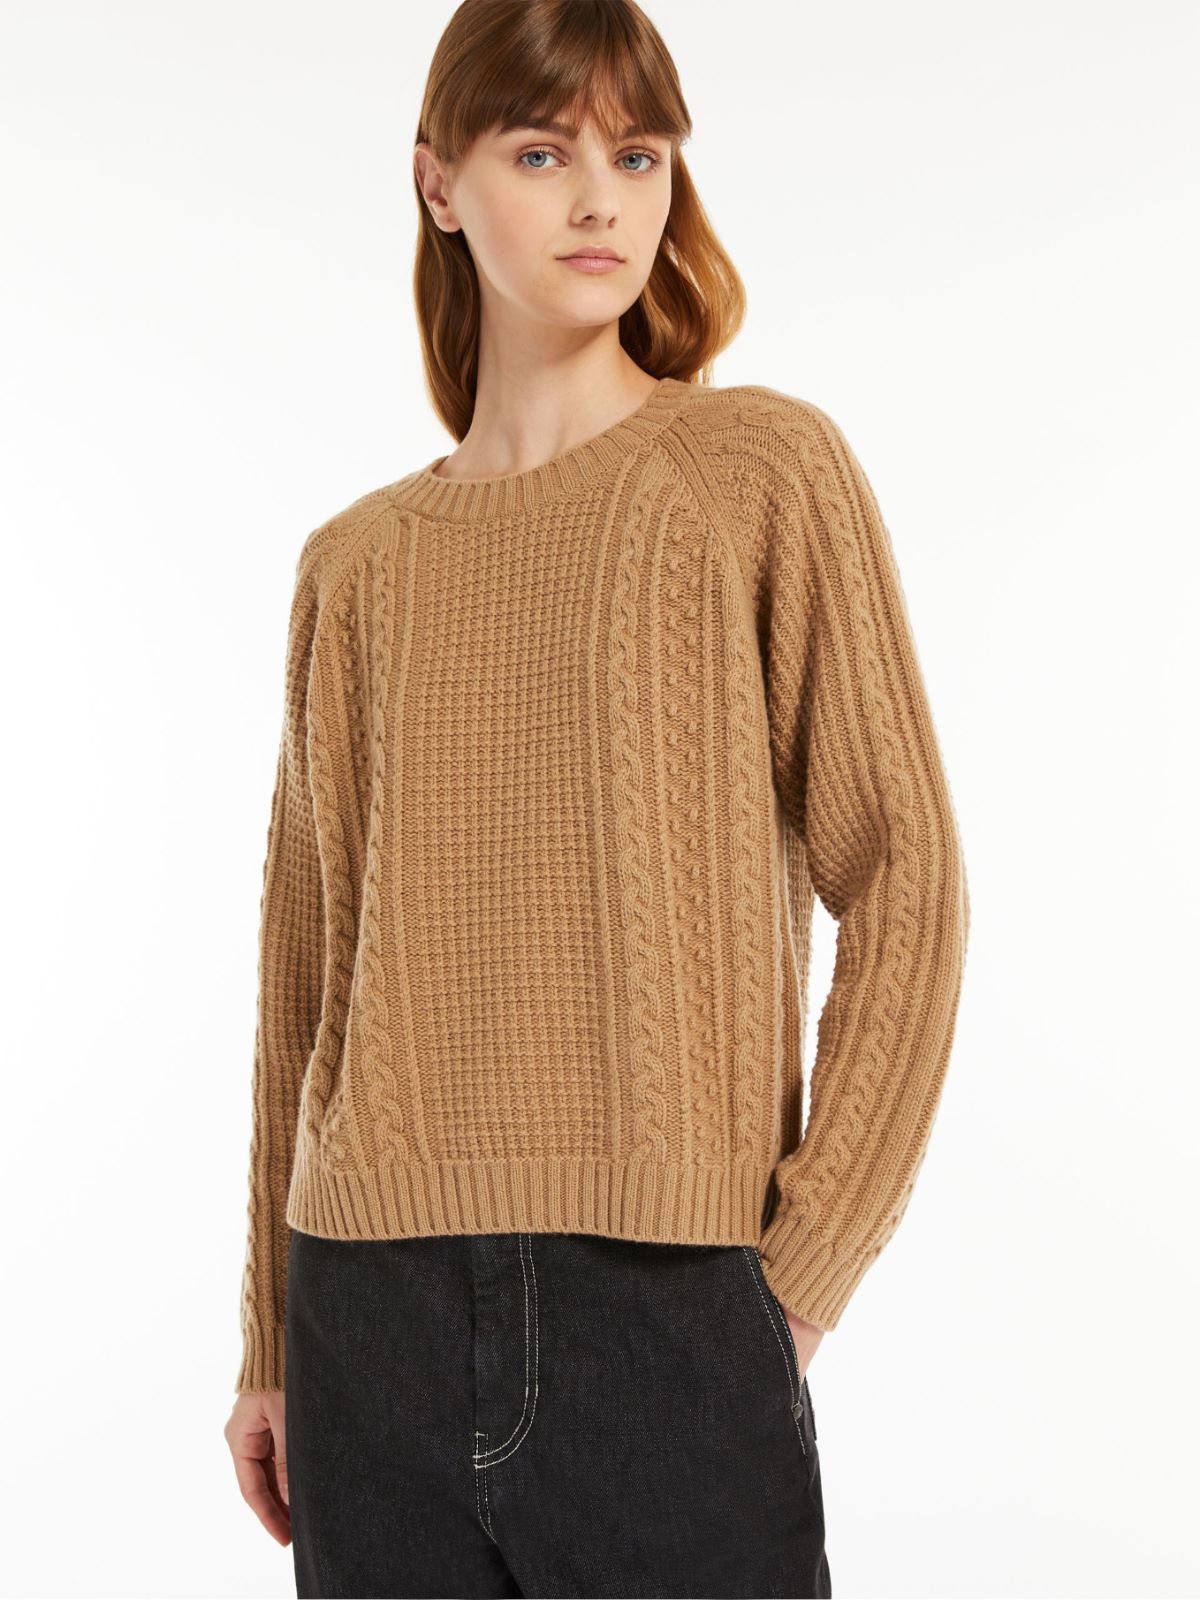 Wool yarn sweater - CAMEL - Weekend Max Mara - 4